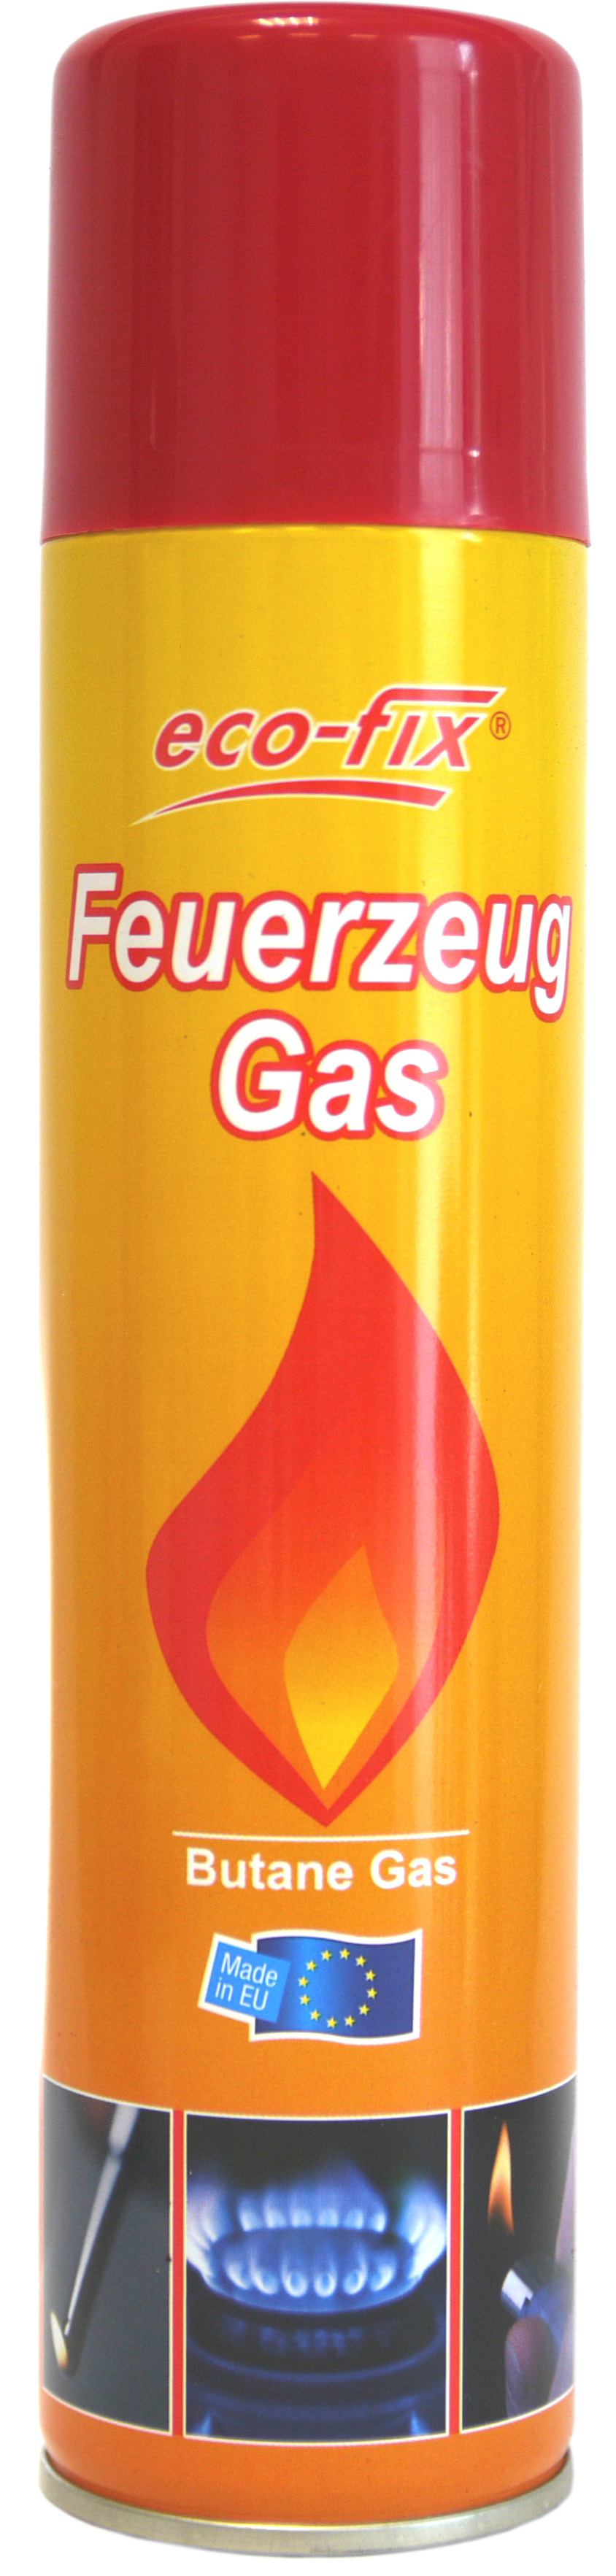 20001 - lighter gas 300 ml